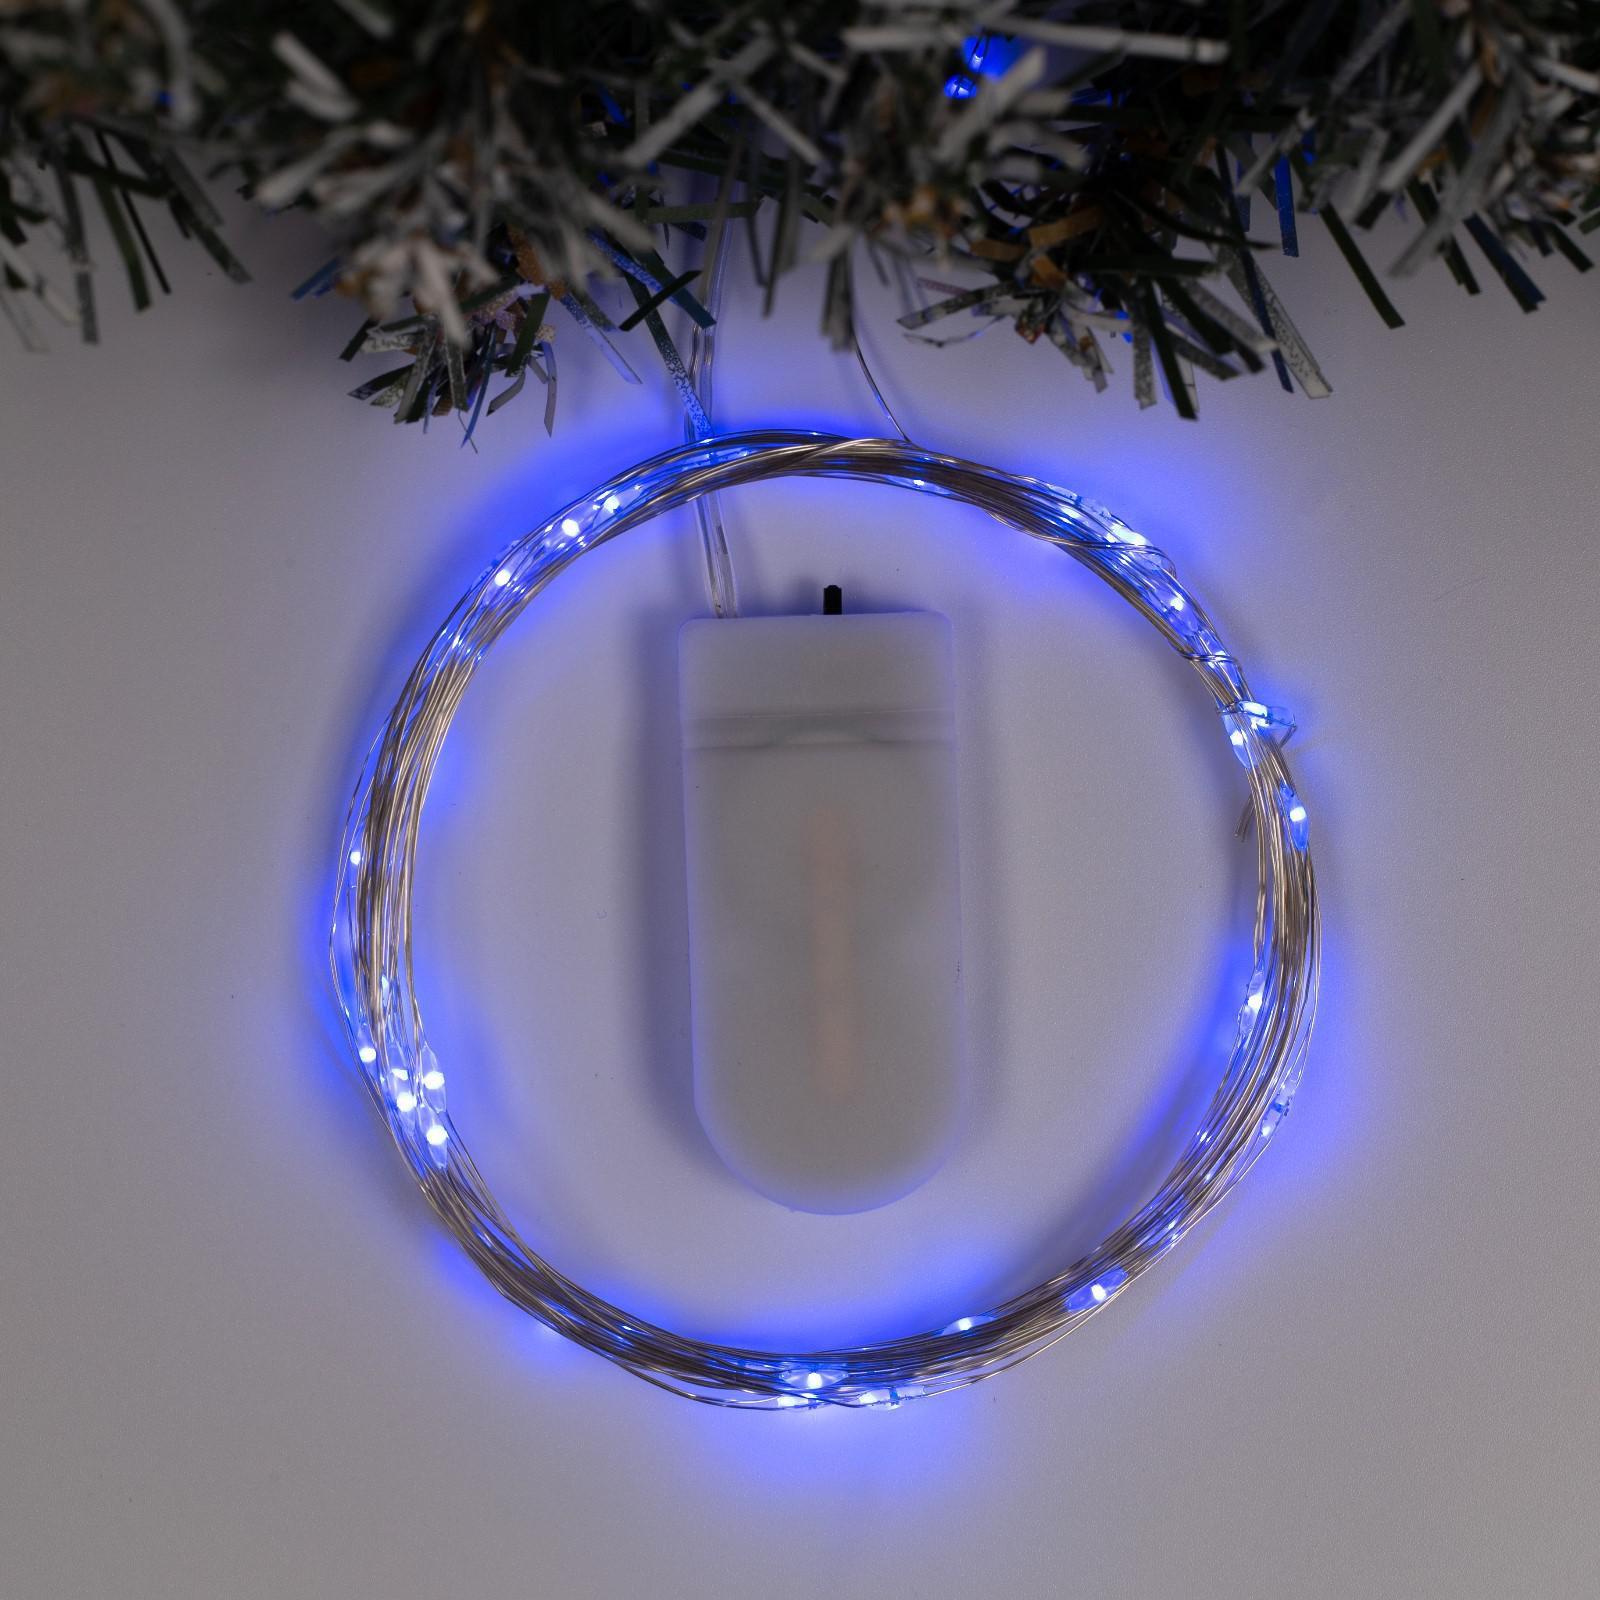 Гирлянда Luazon «Нить» 5 м роса IP20 серебристая нить 50 LED свечение синее CR2032х2 - фото 1